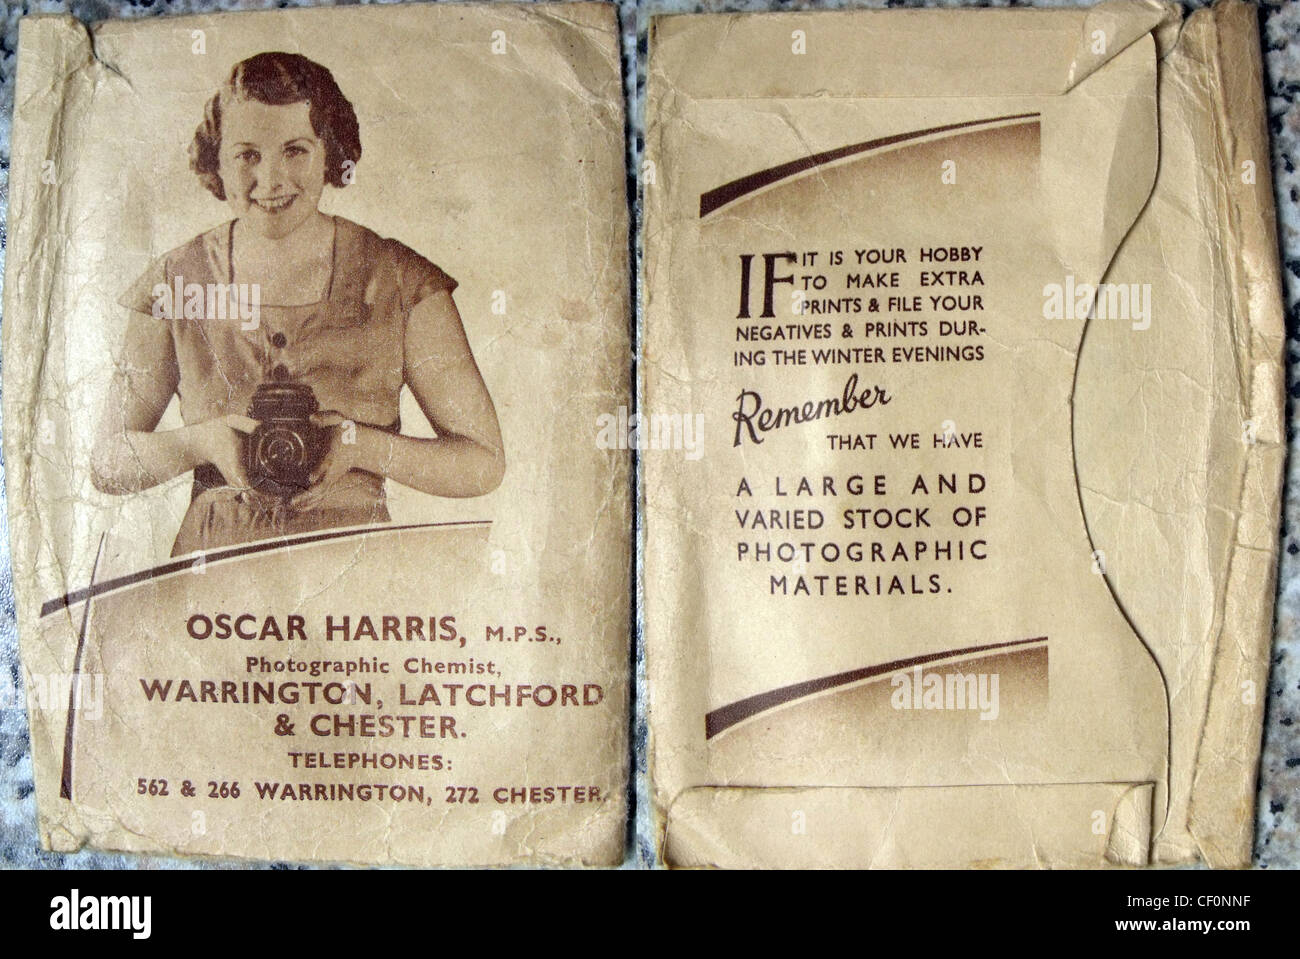 Oscar Harris boutique film et enveloppe de traitement négatif, Chemists Shop, Latchford, Warrington, Cheshire, Angleterre, Royaume-Uni Banque D'Images